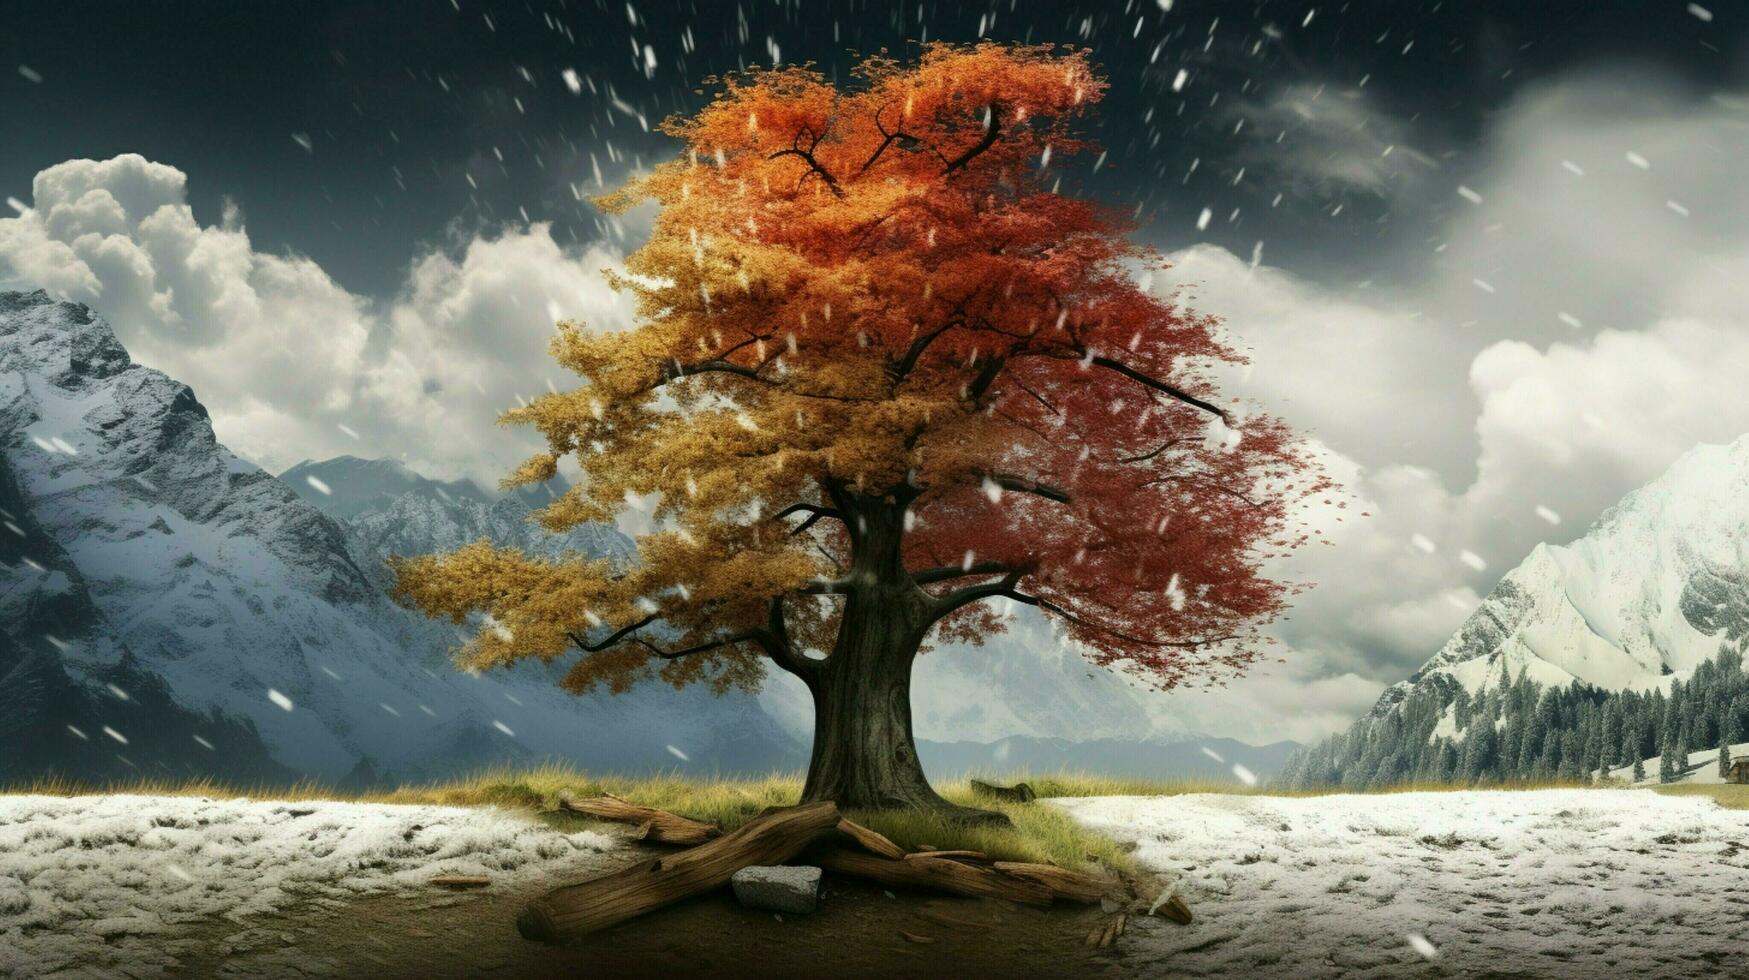 arbre avec deux saisons par rapport scène photo